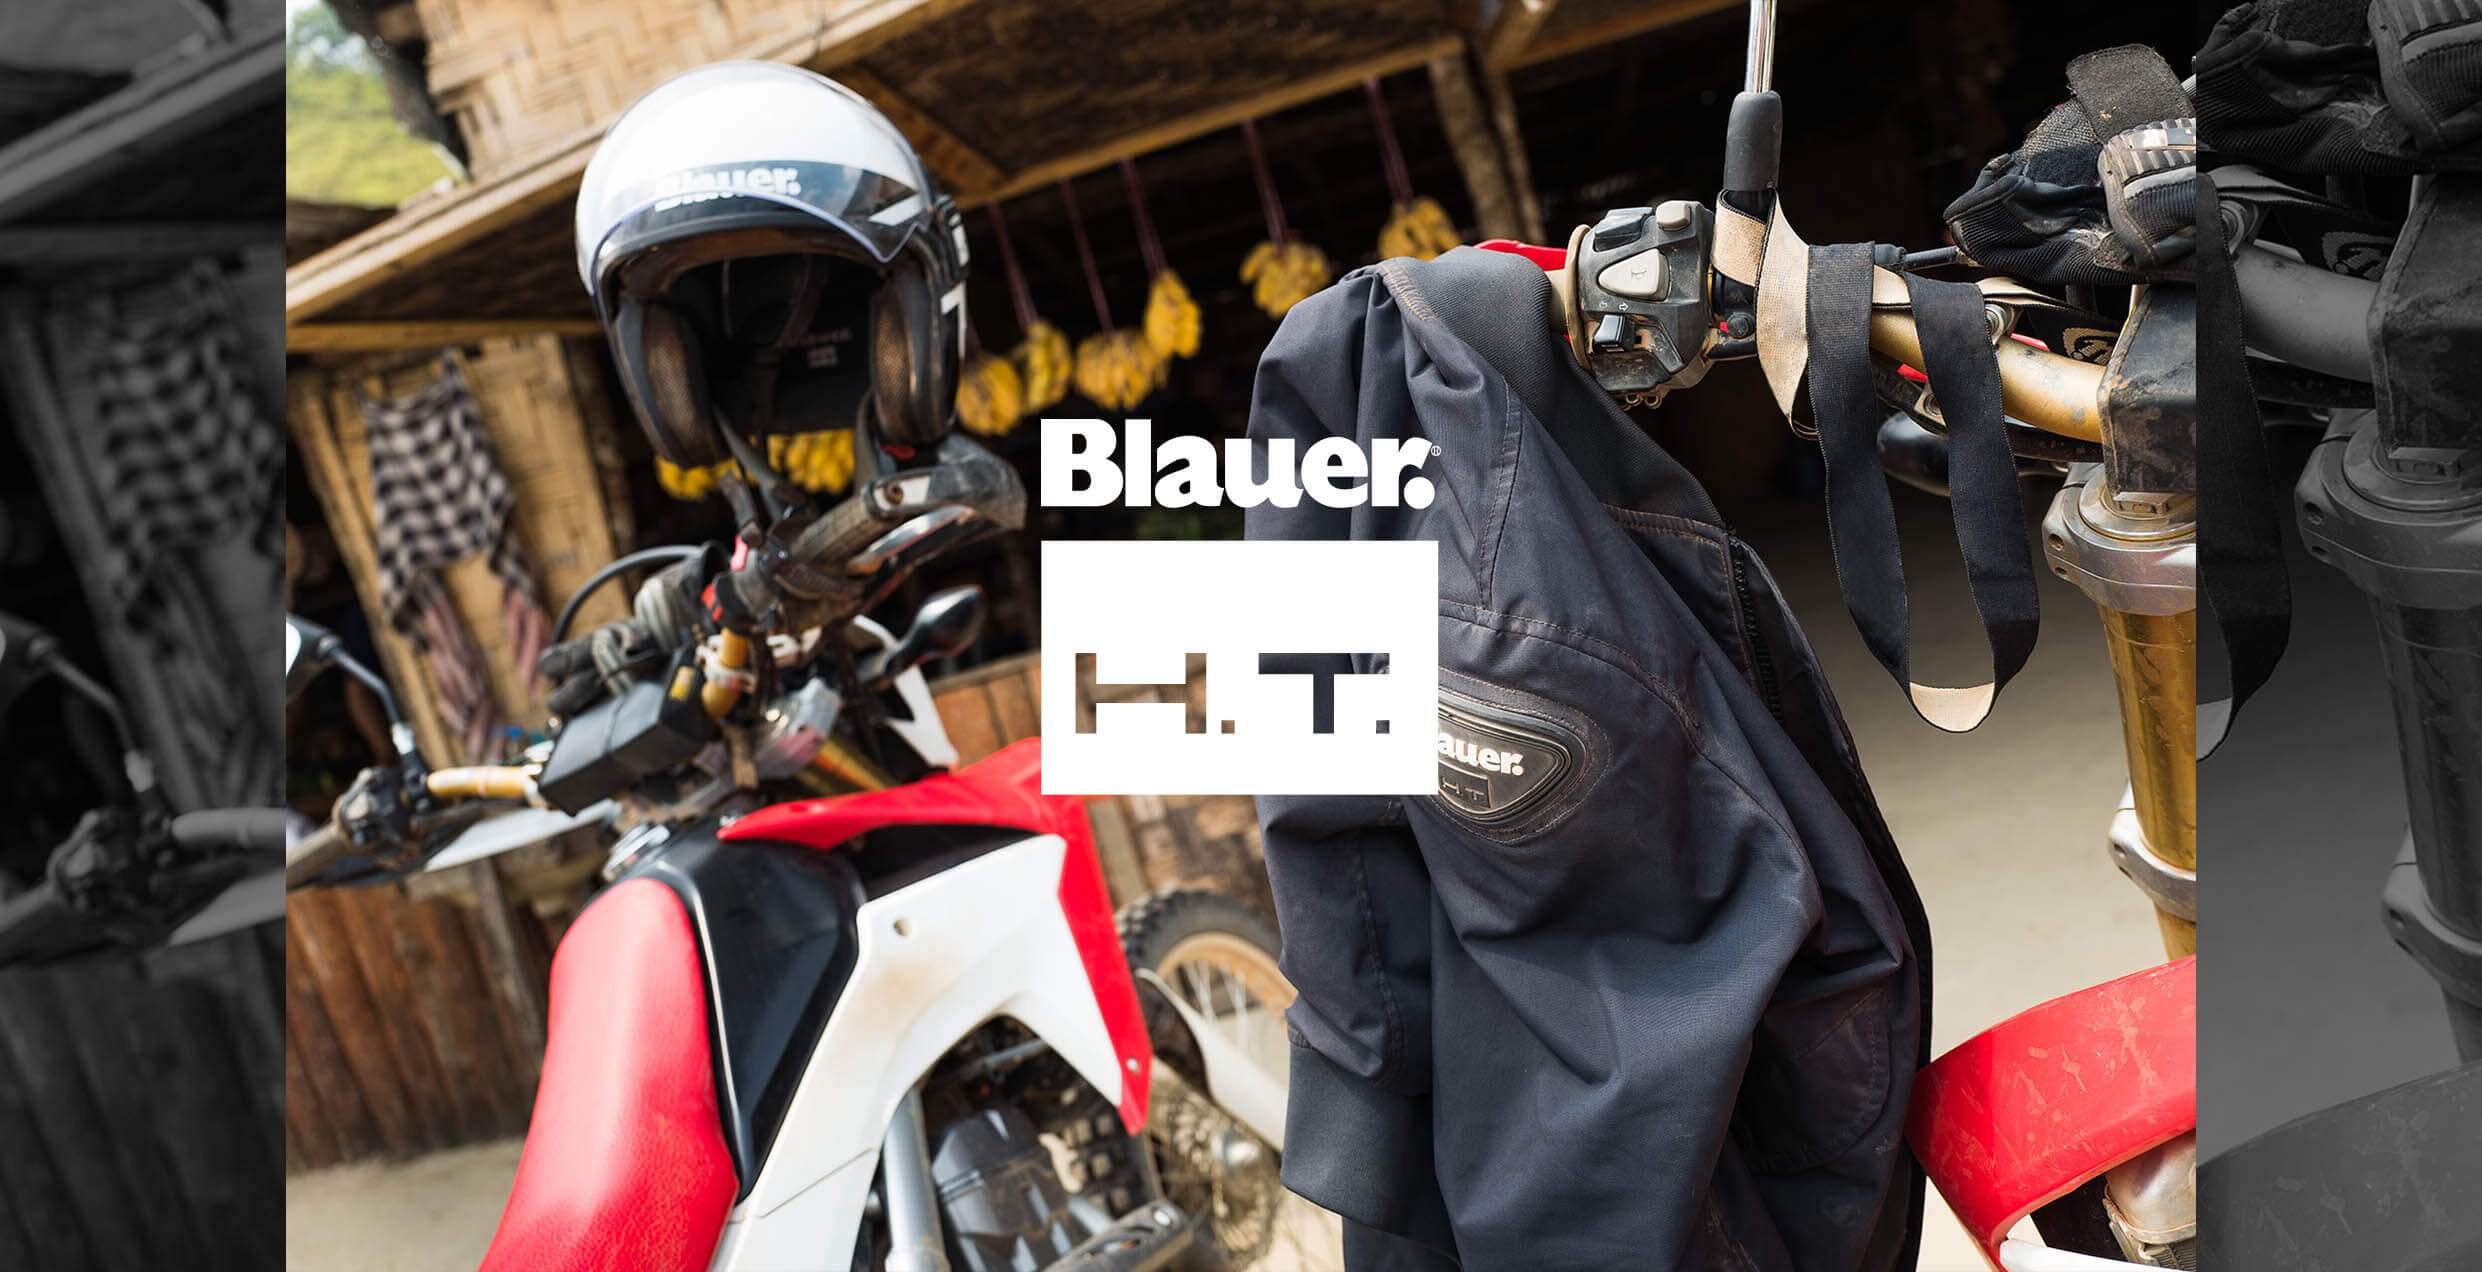 Blauer H.T.のブランドイメージの画像